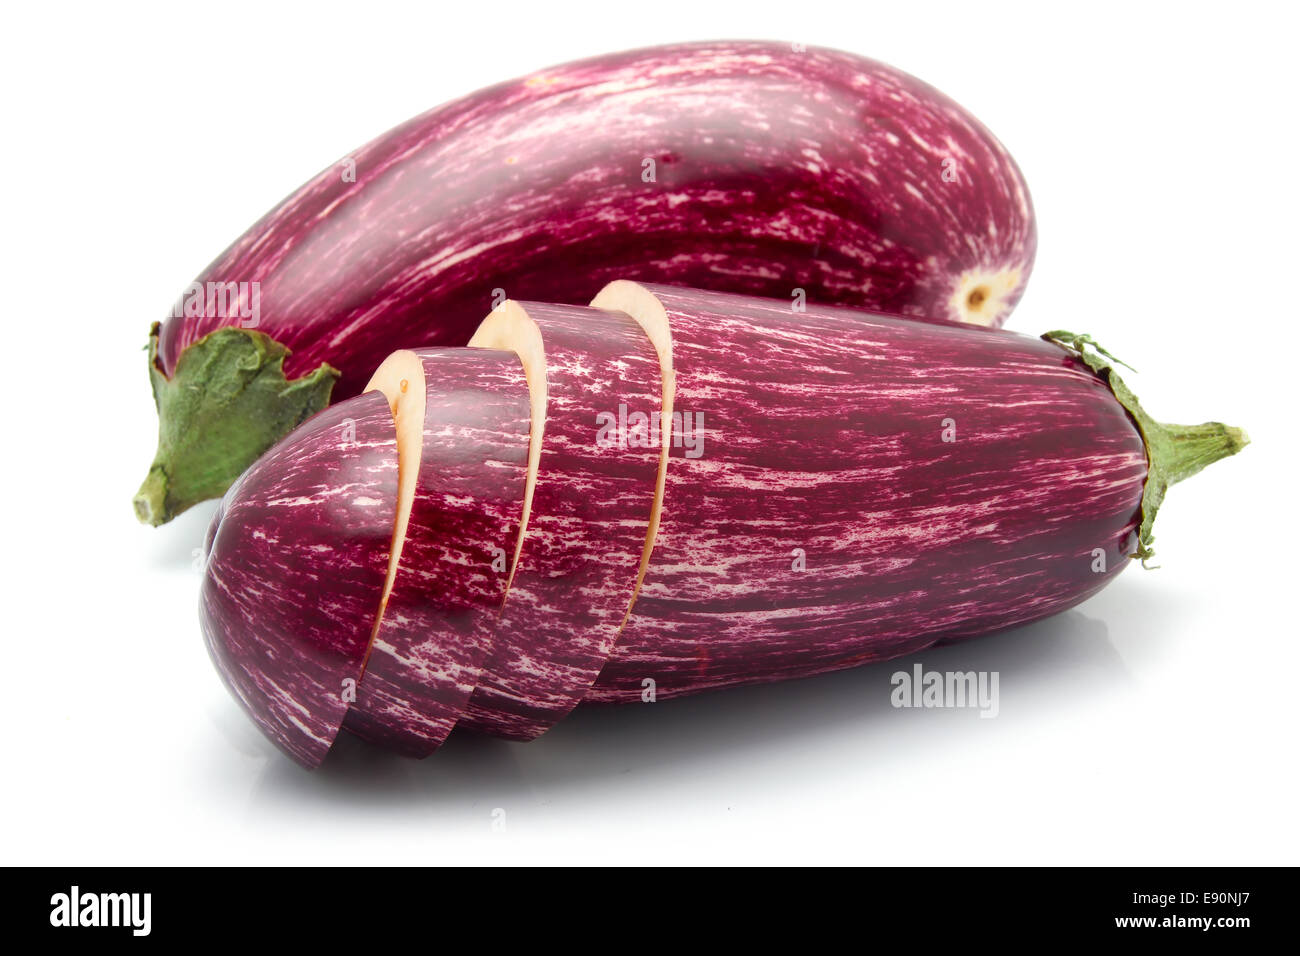 Purple sliced eggplant vegetables isolated Stock Photo